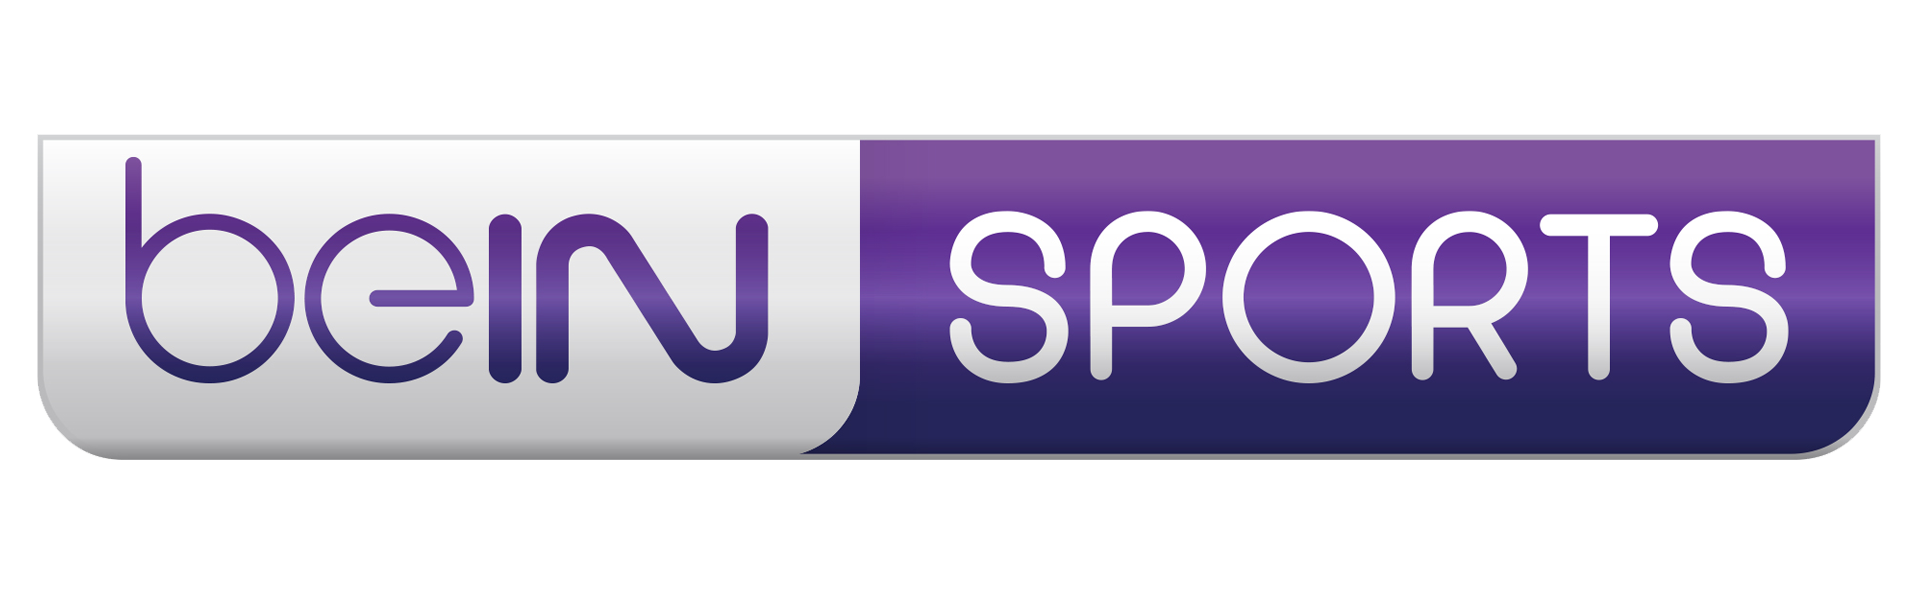 Bein sport 3. Bein Sport 1 logo. Логотип канала Bein Sports 2. Лого Беин Спортс. Bein Sports Max 1.